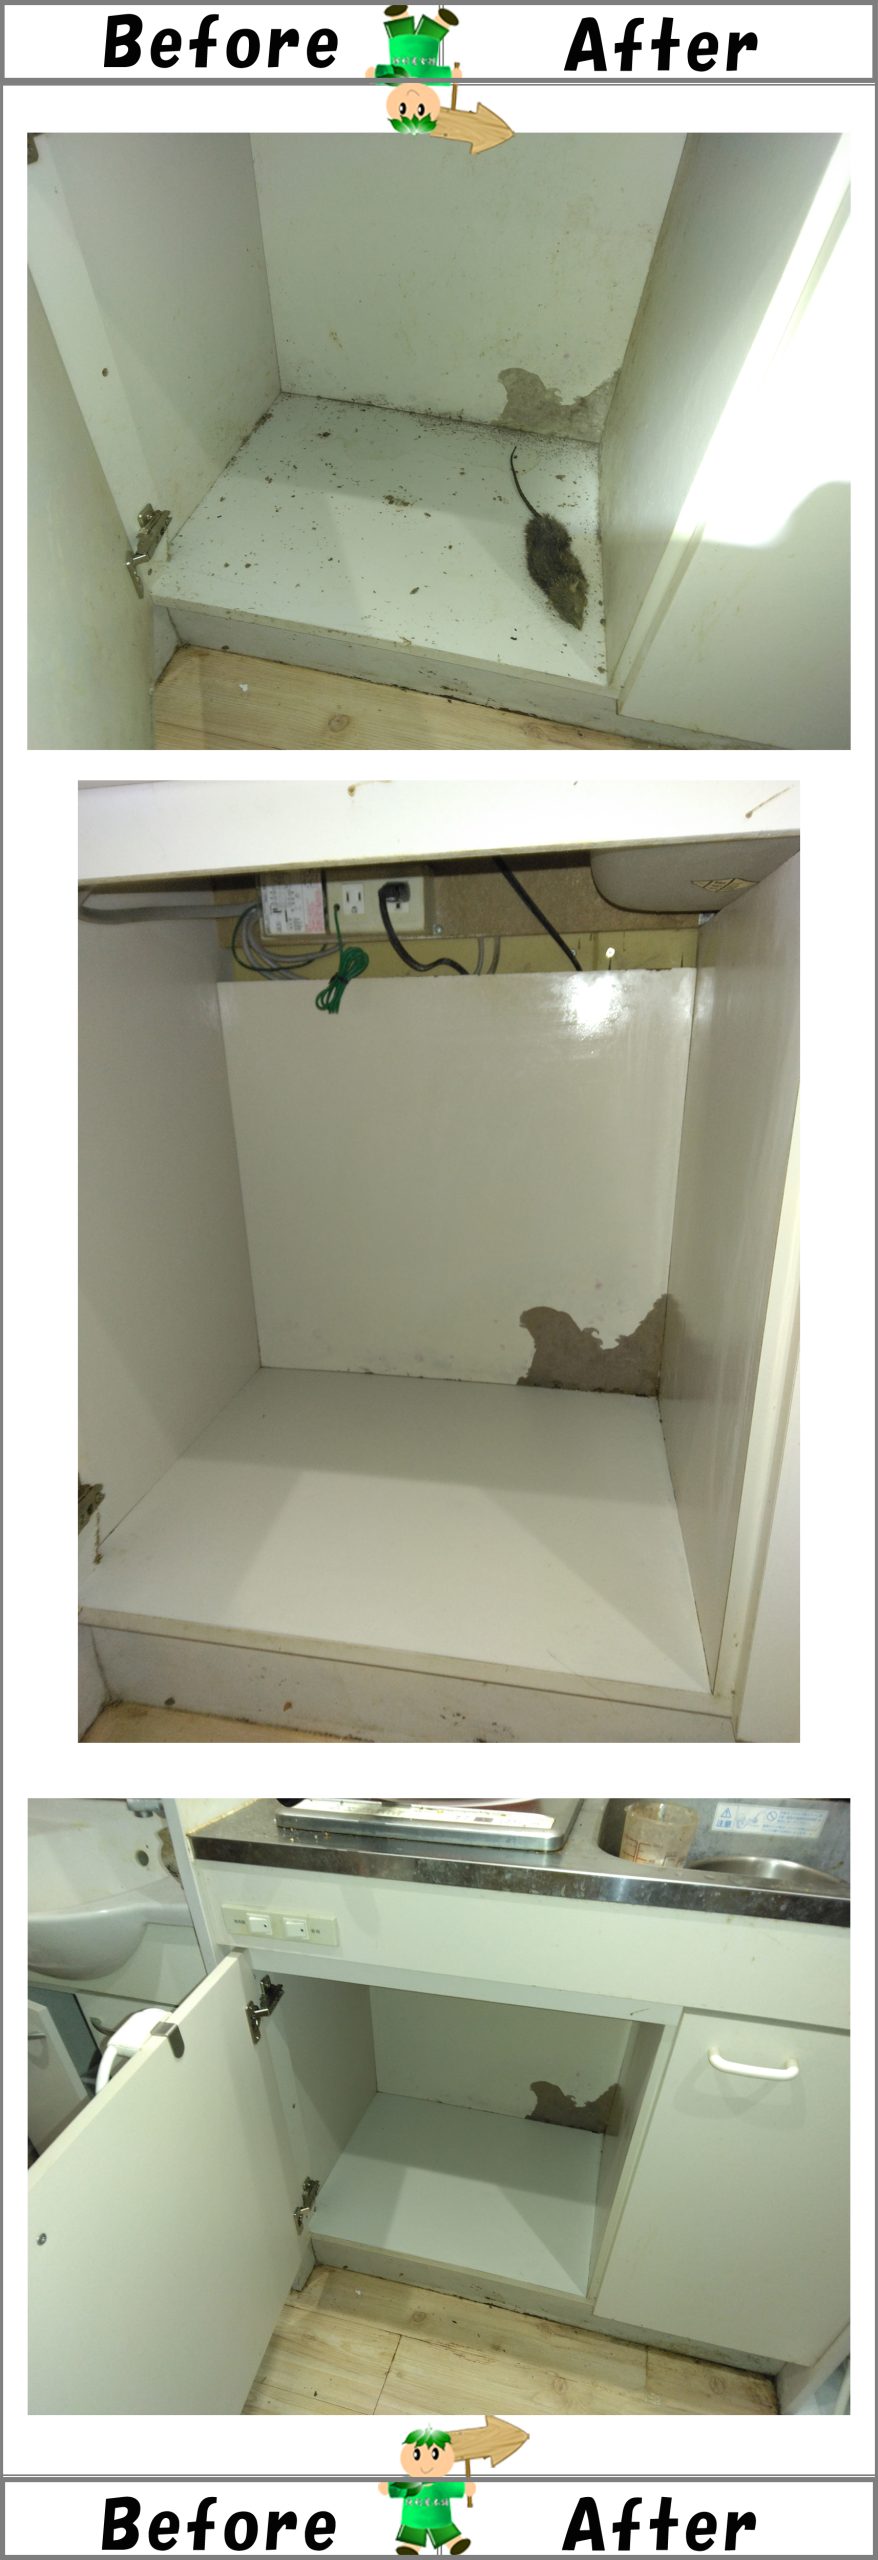 室内キッチンシンク下の収納棚で死んだネズミの死骸回収、消毒クリーニング作業写真